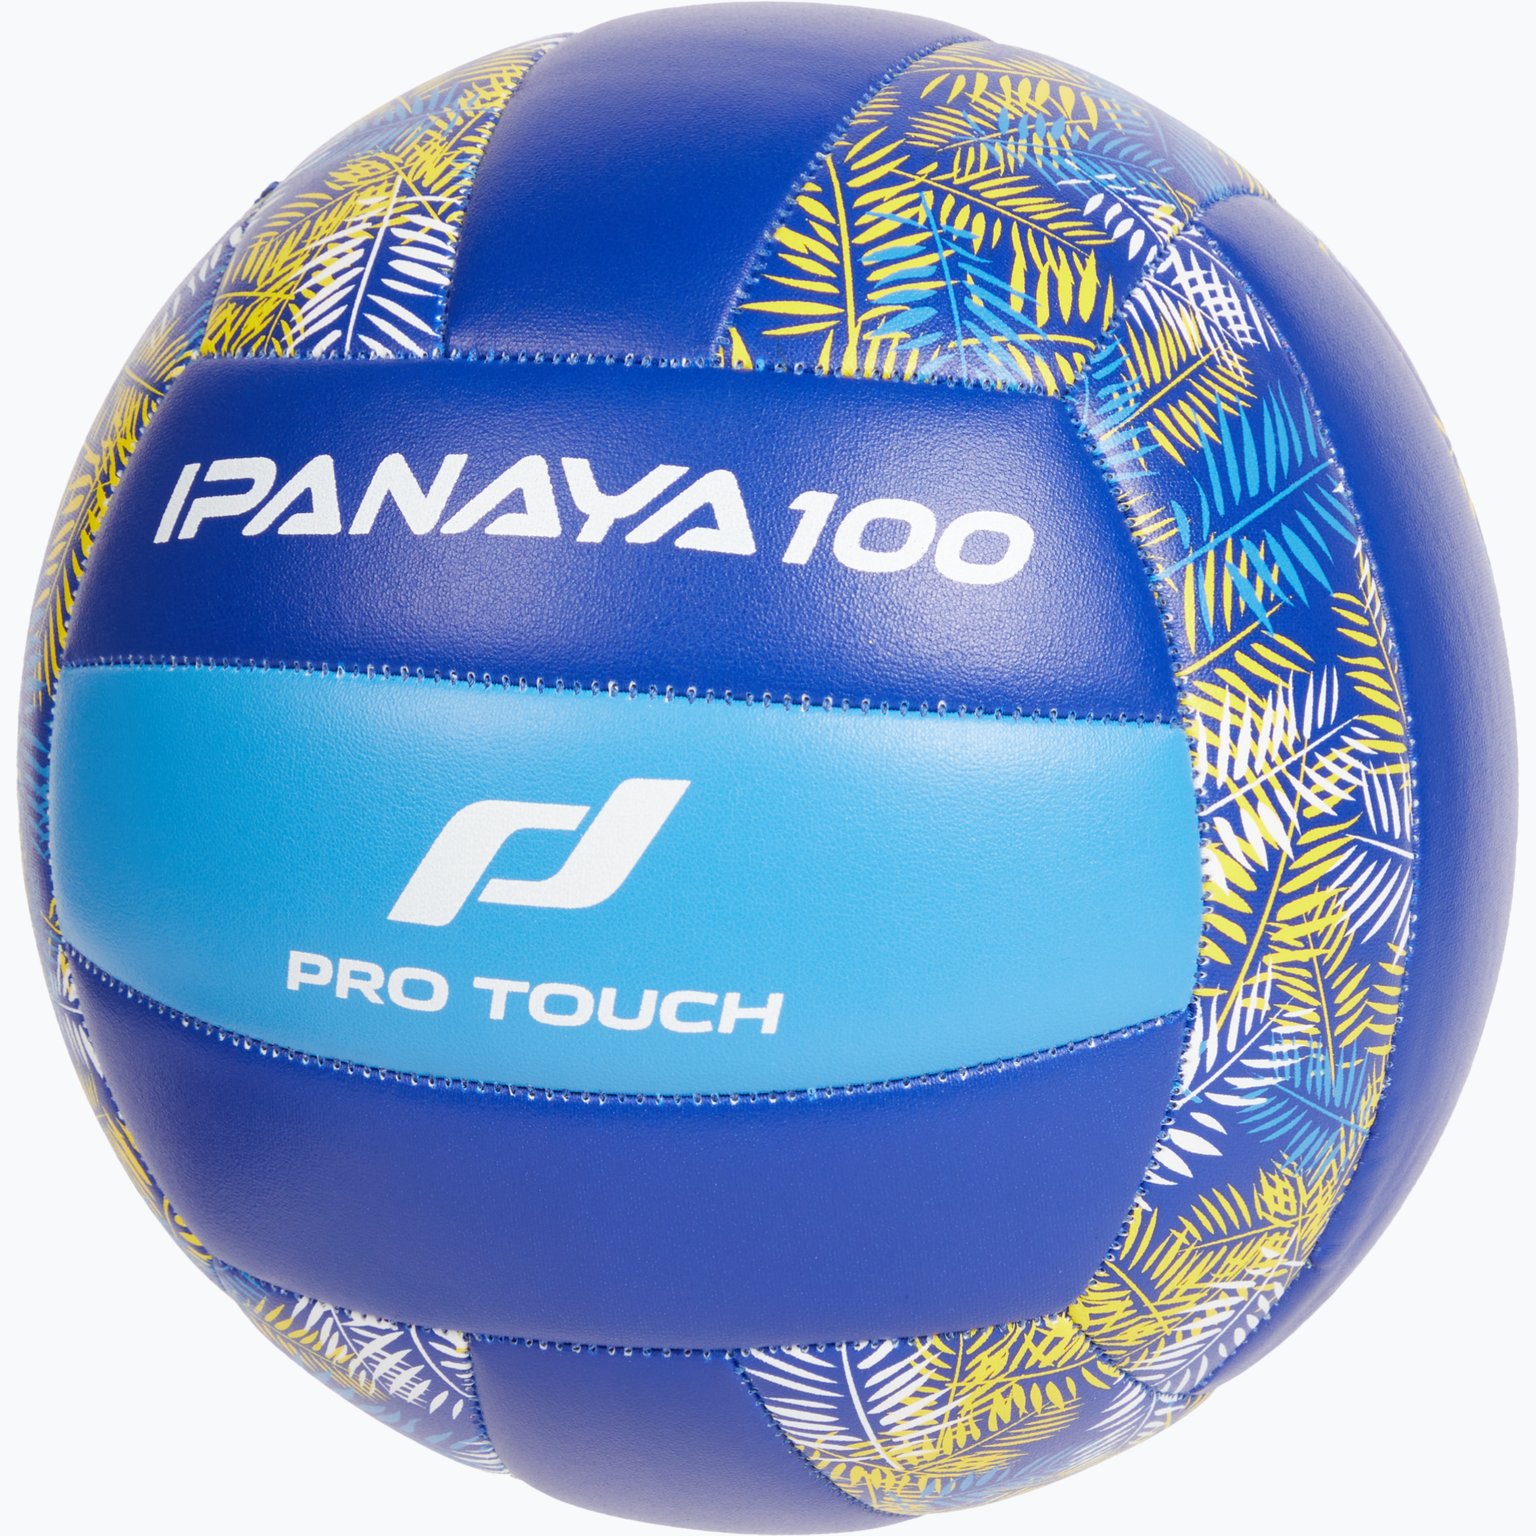 Ipanaya 100 volleyboll